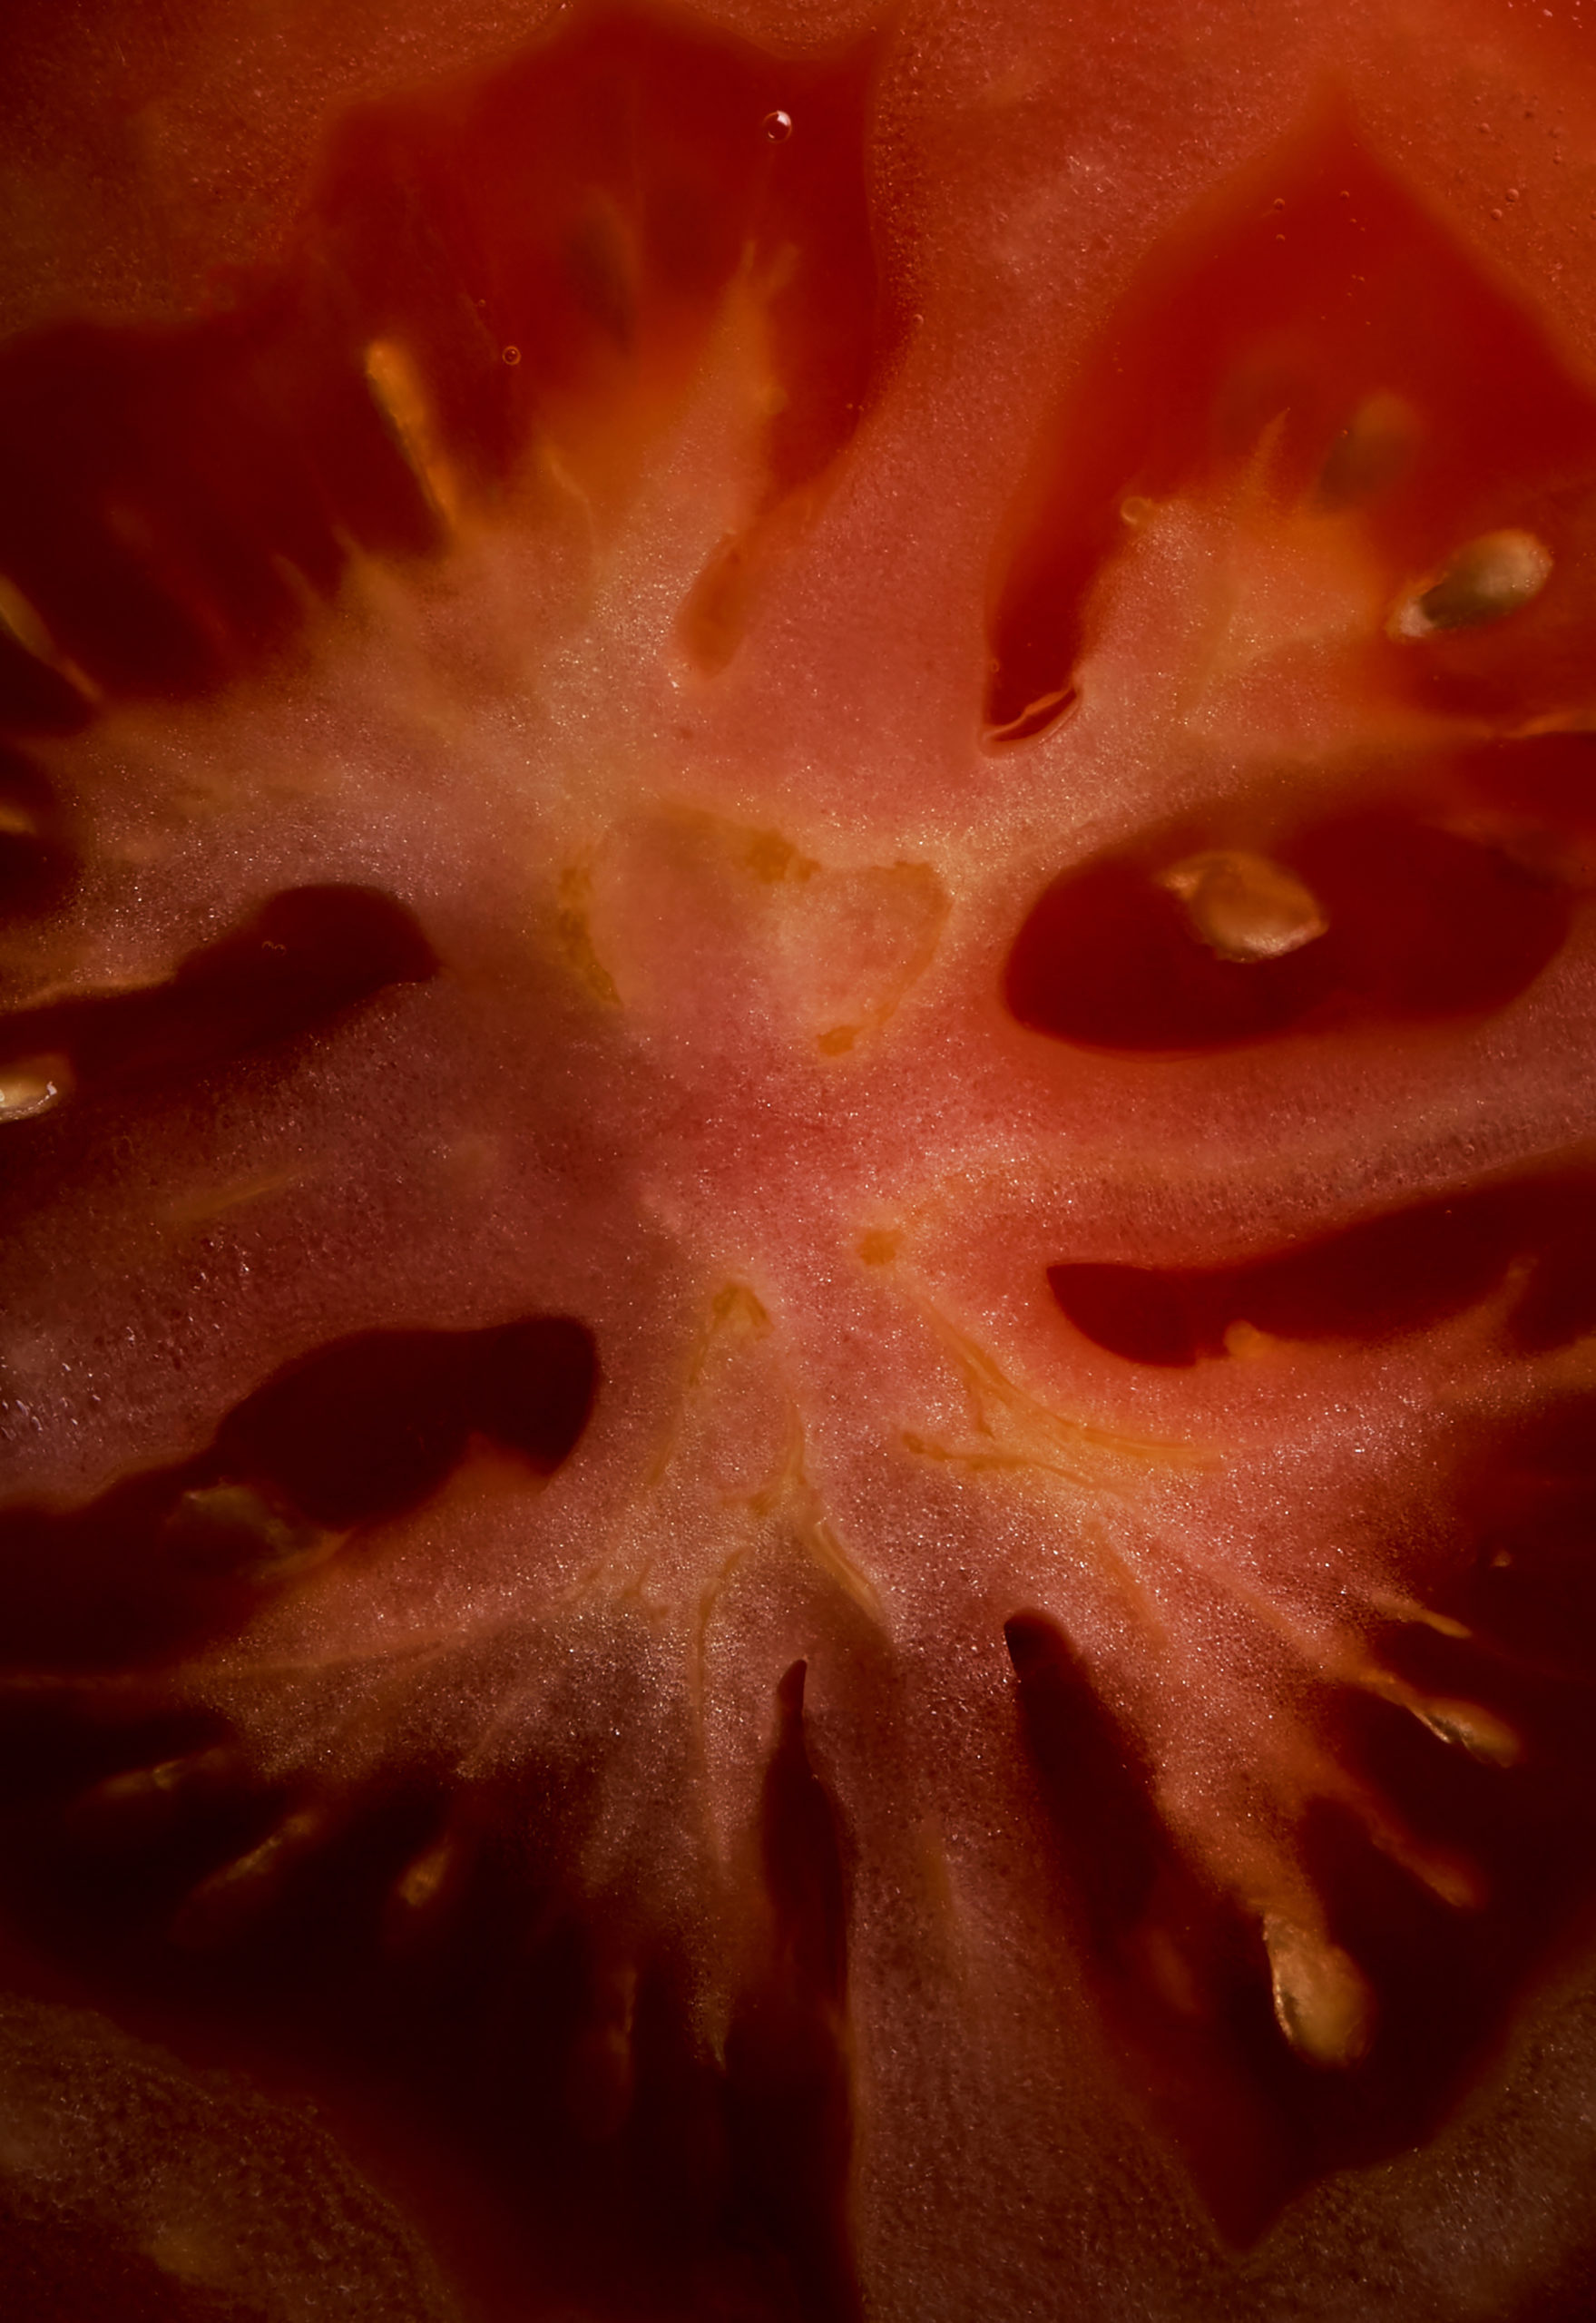 Macro image of a tomato